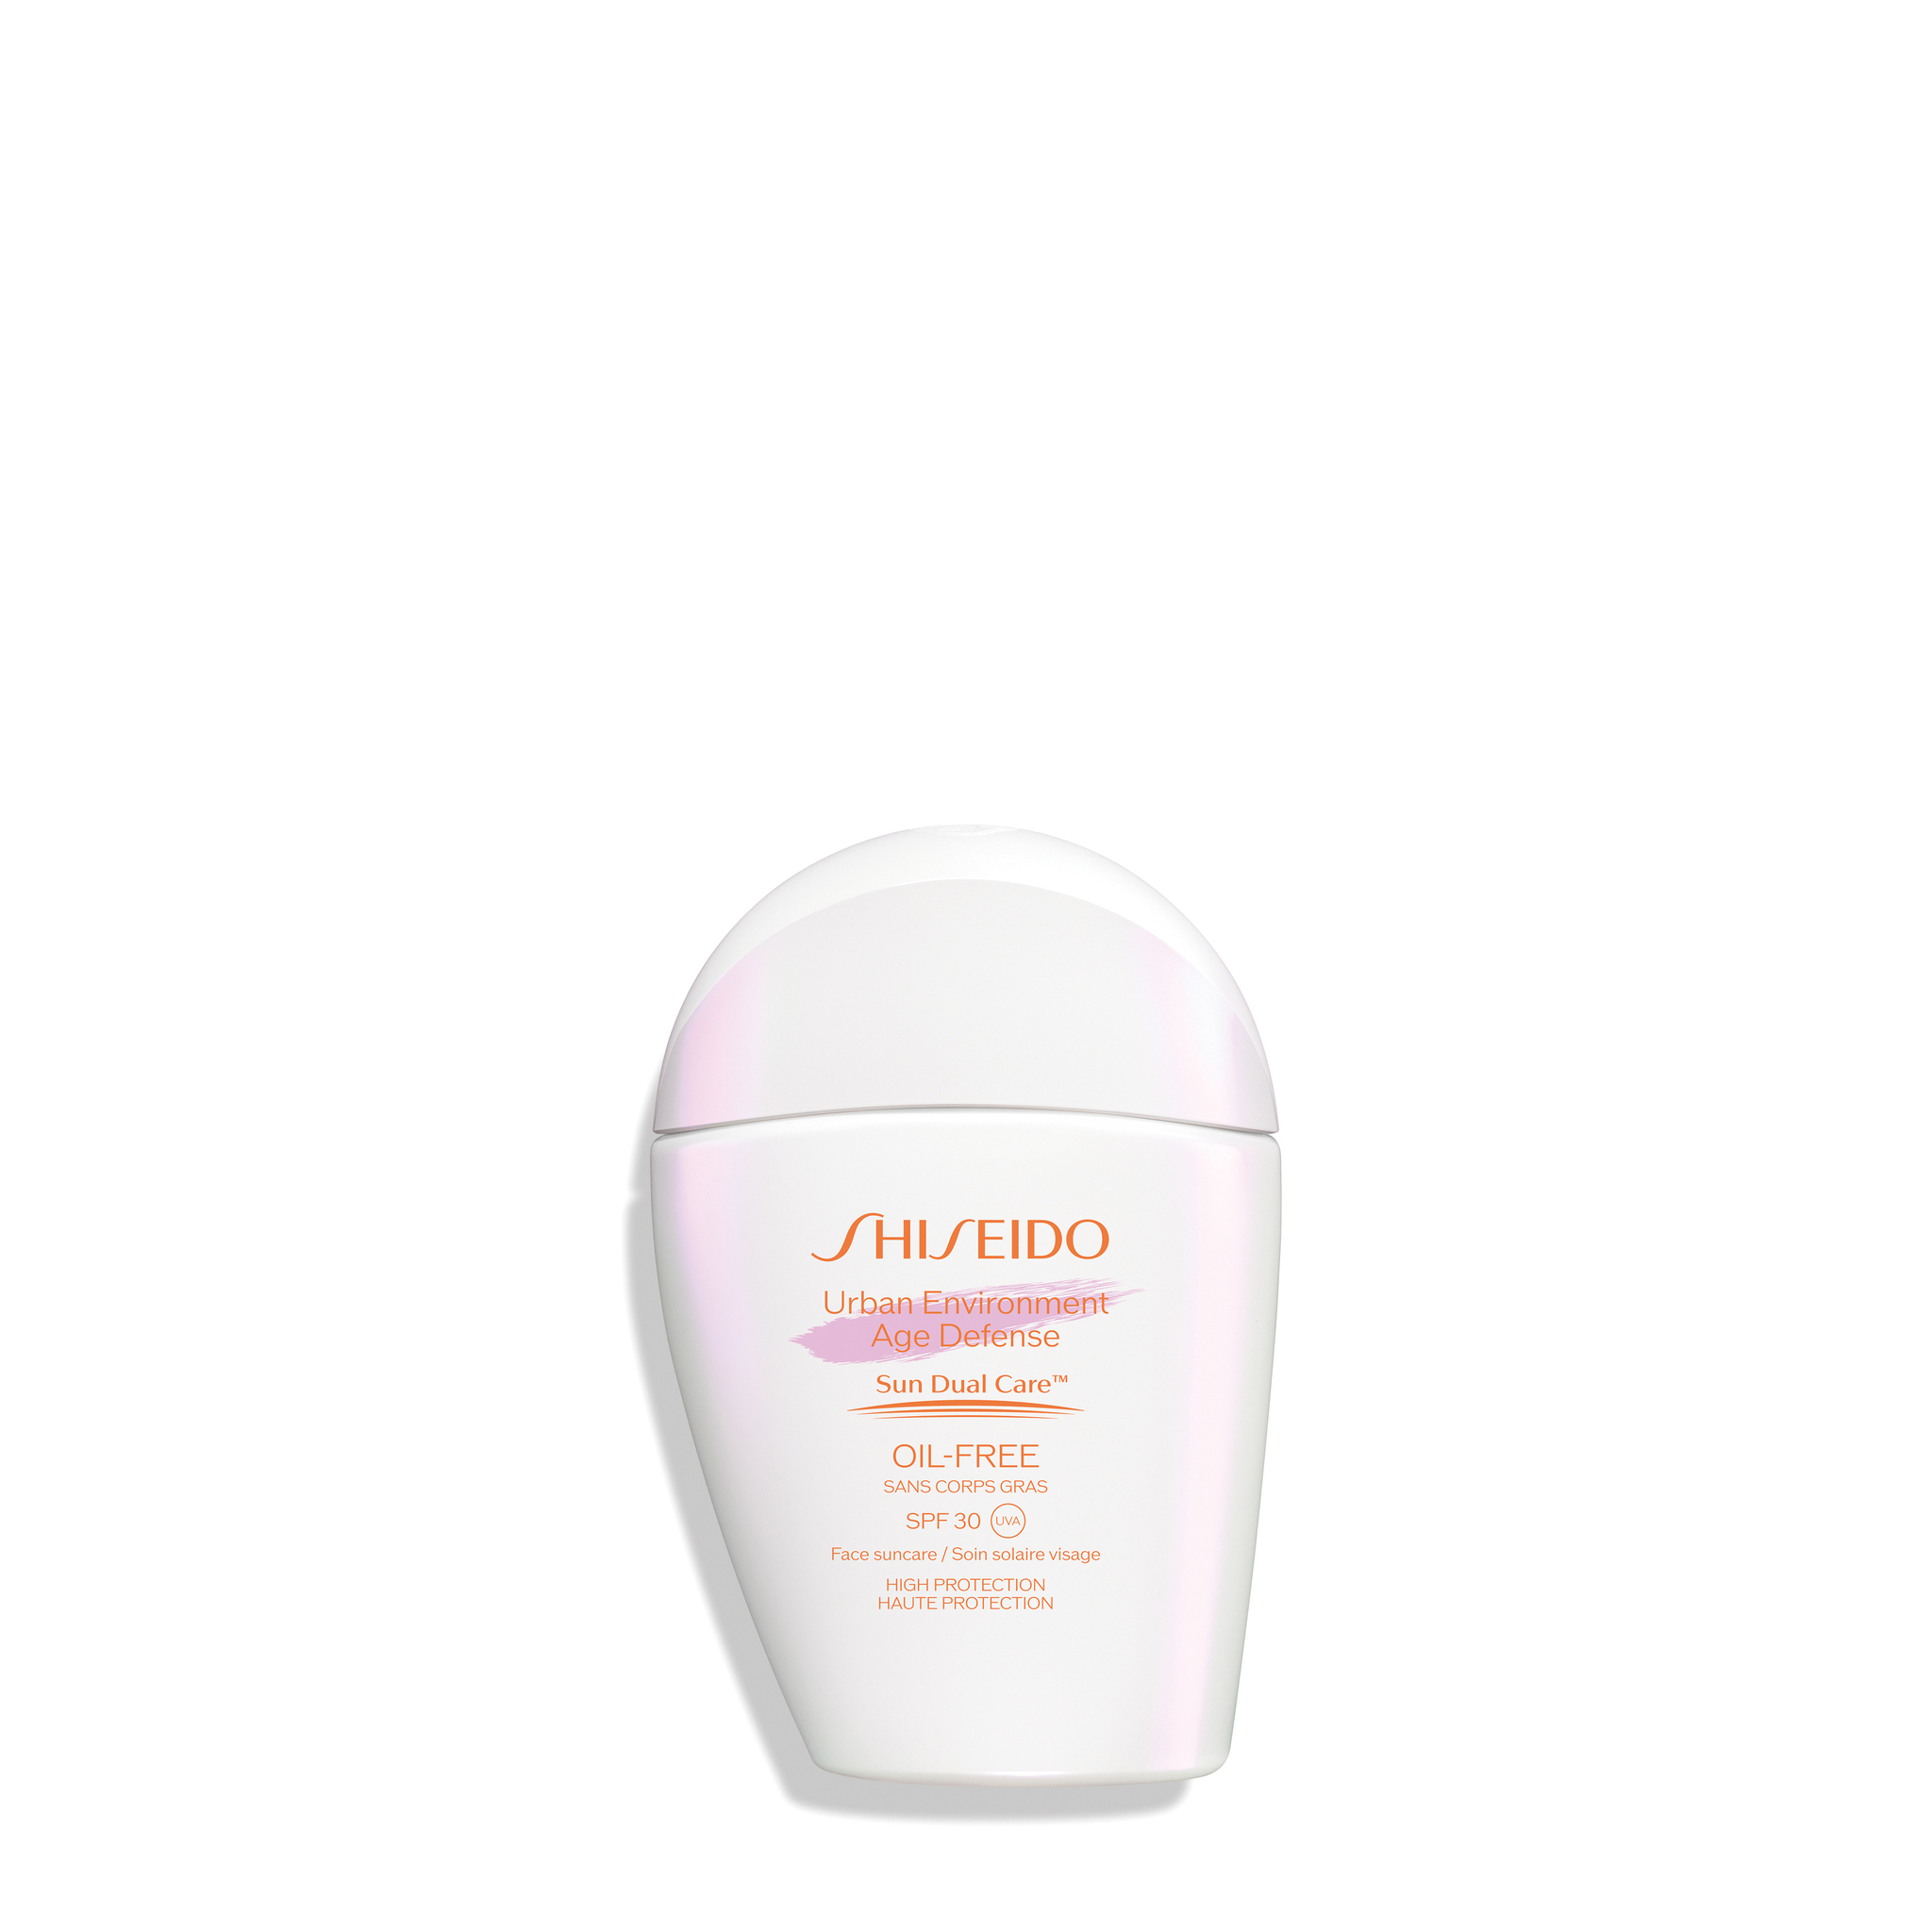 Importante usar crema solar cada día. Shiseido Urban Environment Oil-Free Emulsion SPF 30, 45 euros.